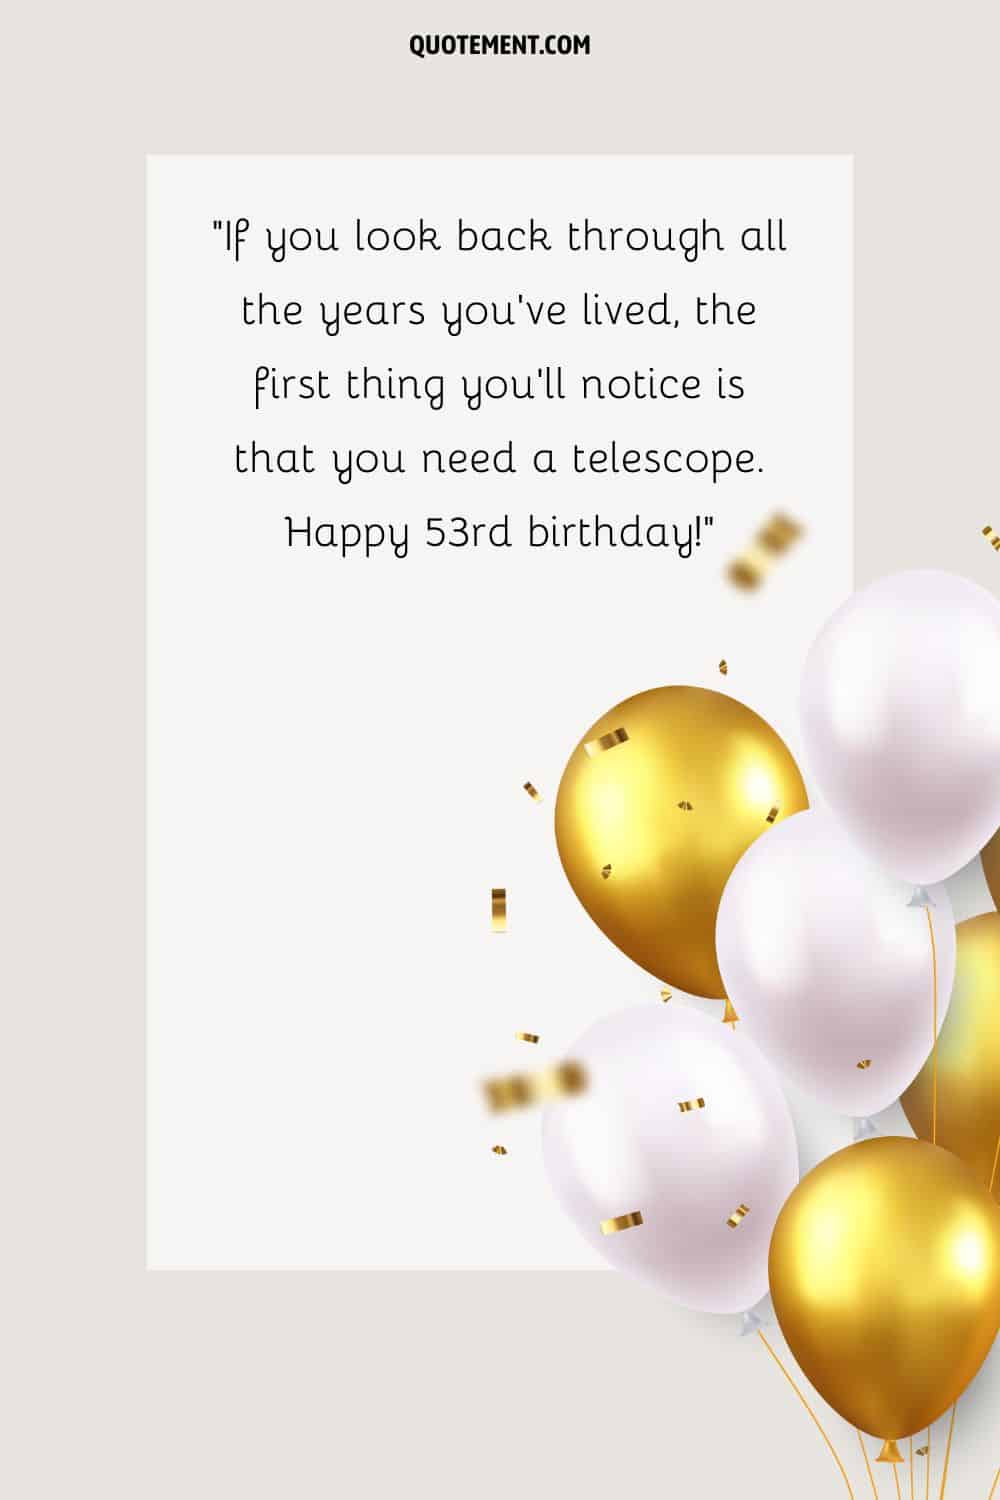 Mensaje divertido para su 53 cumpleaños, globos blancos y dorados, y confeti